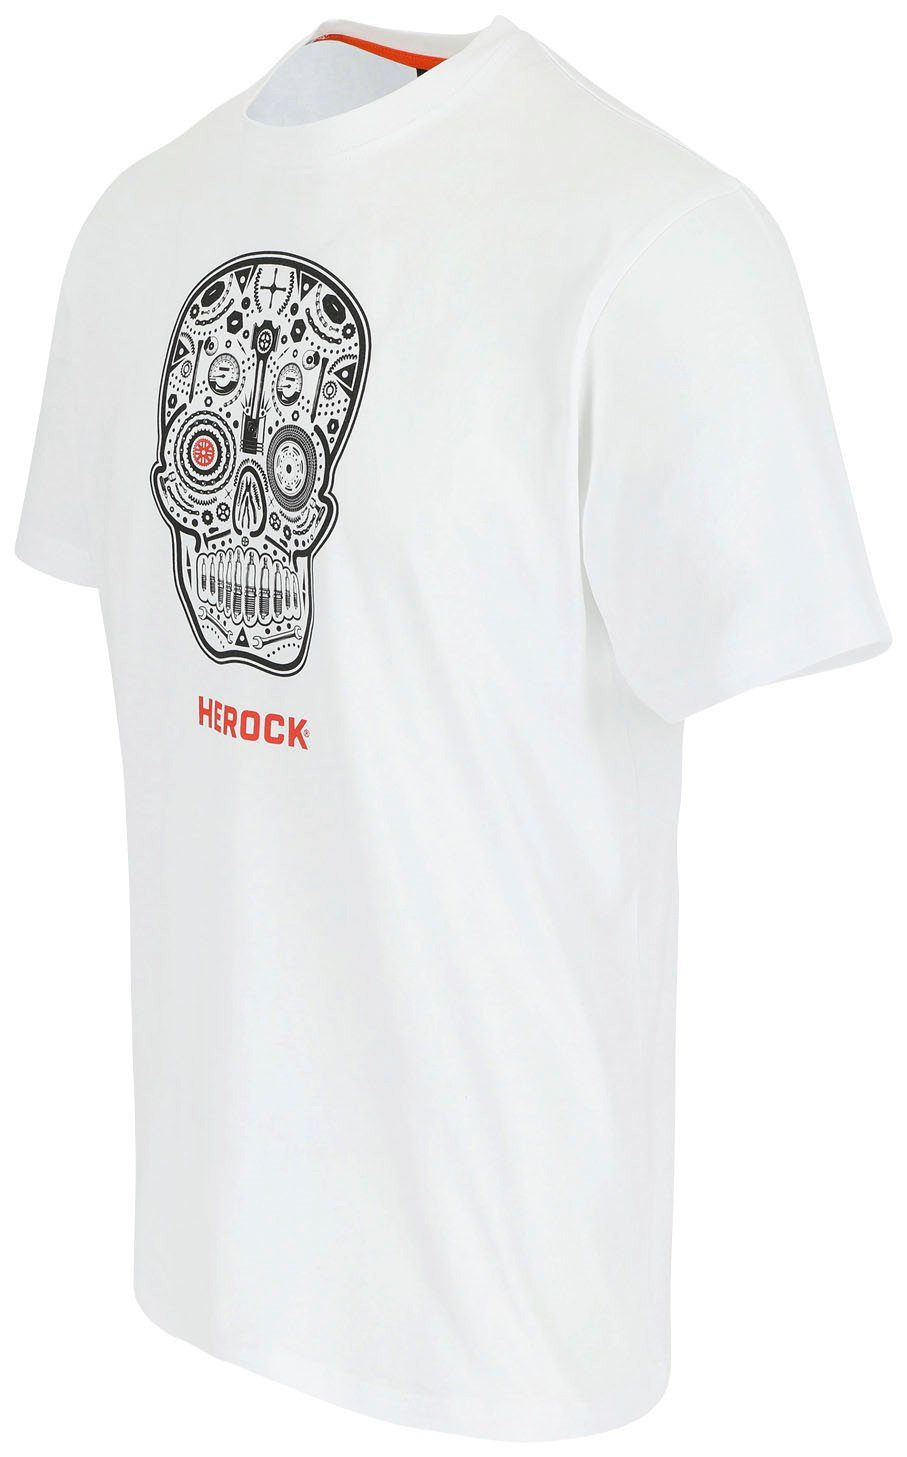 Edition, gestricktem T-Shirt Limited Skullo Ein Freizeit-T-Shirt mit kurzärmliges Arbeits-und Rundhalsausschnitt Herock